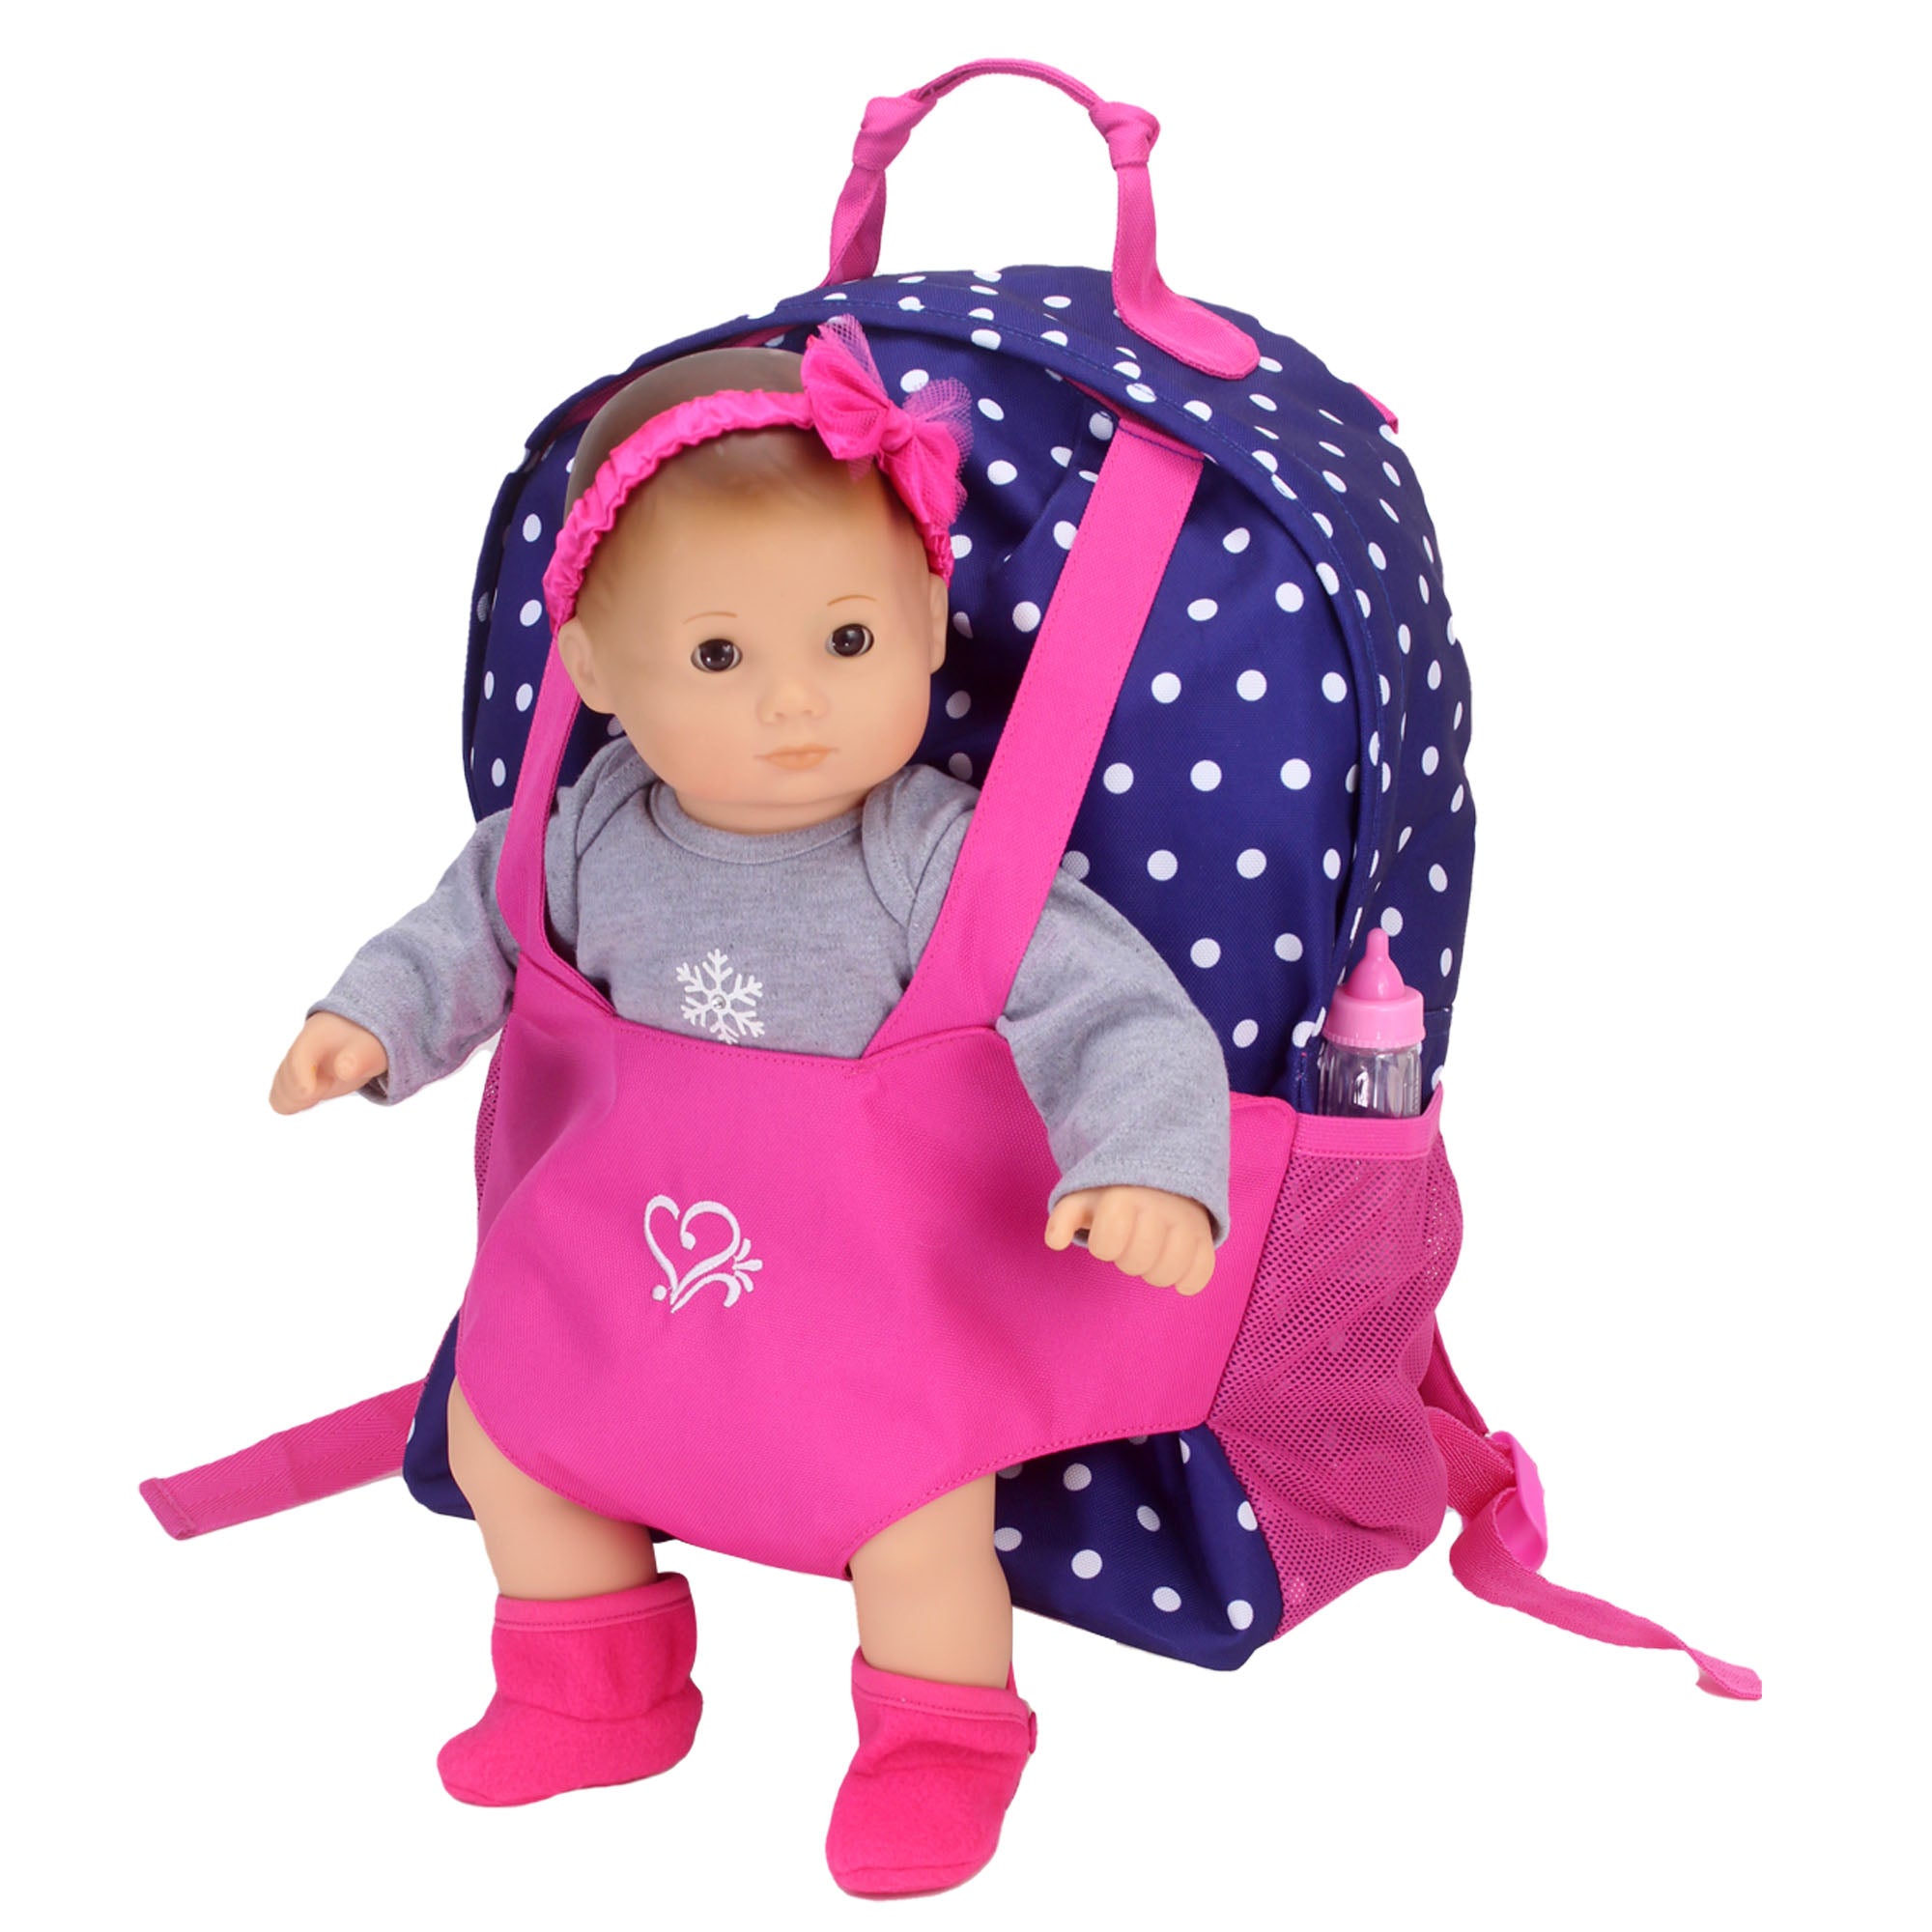 Sophia's - 18" Doll - Polka Dot Doll Carrier Backpack - Navy